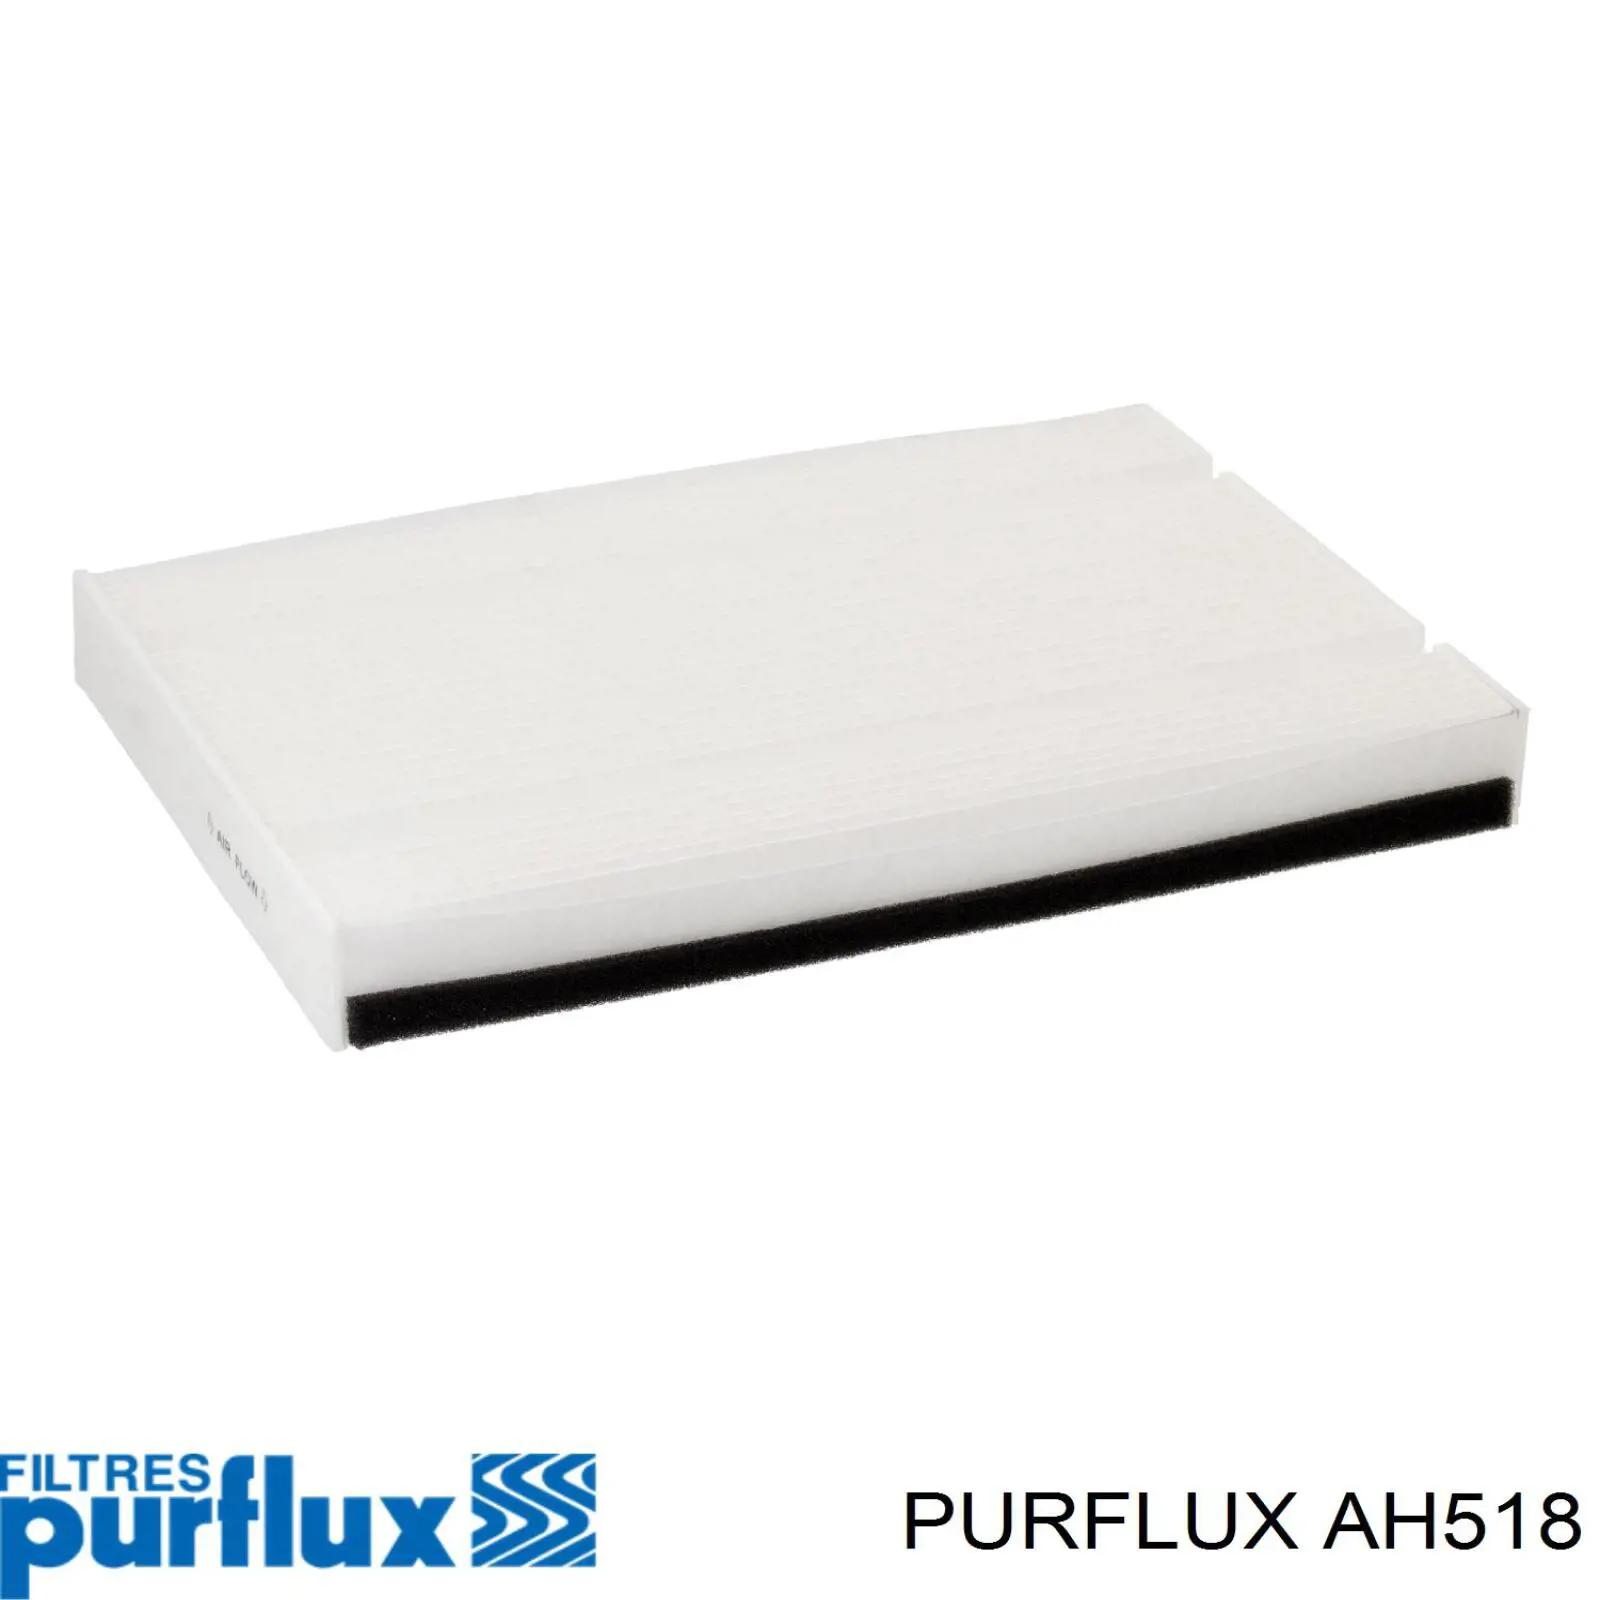 AH518 Purflux filtro habitáculo